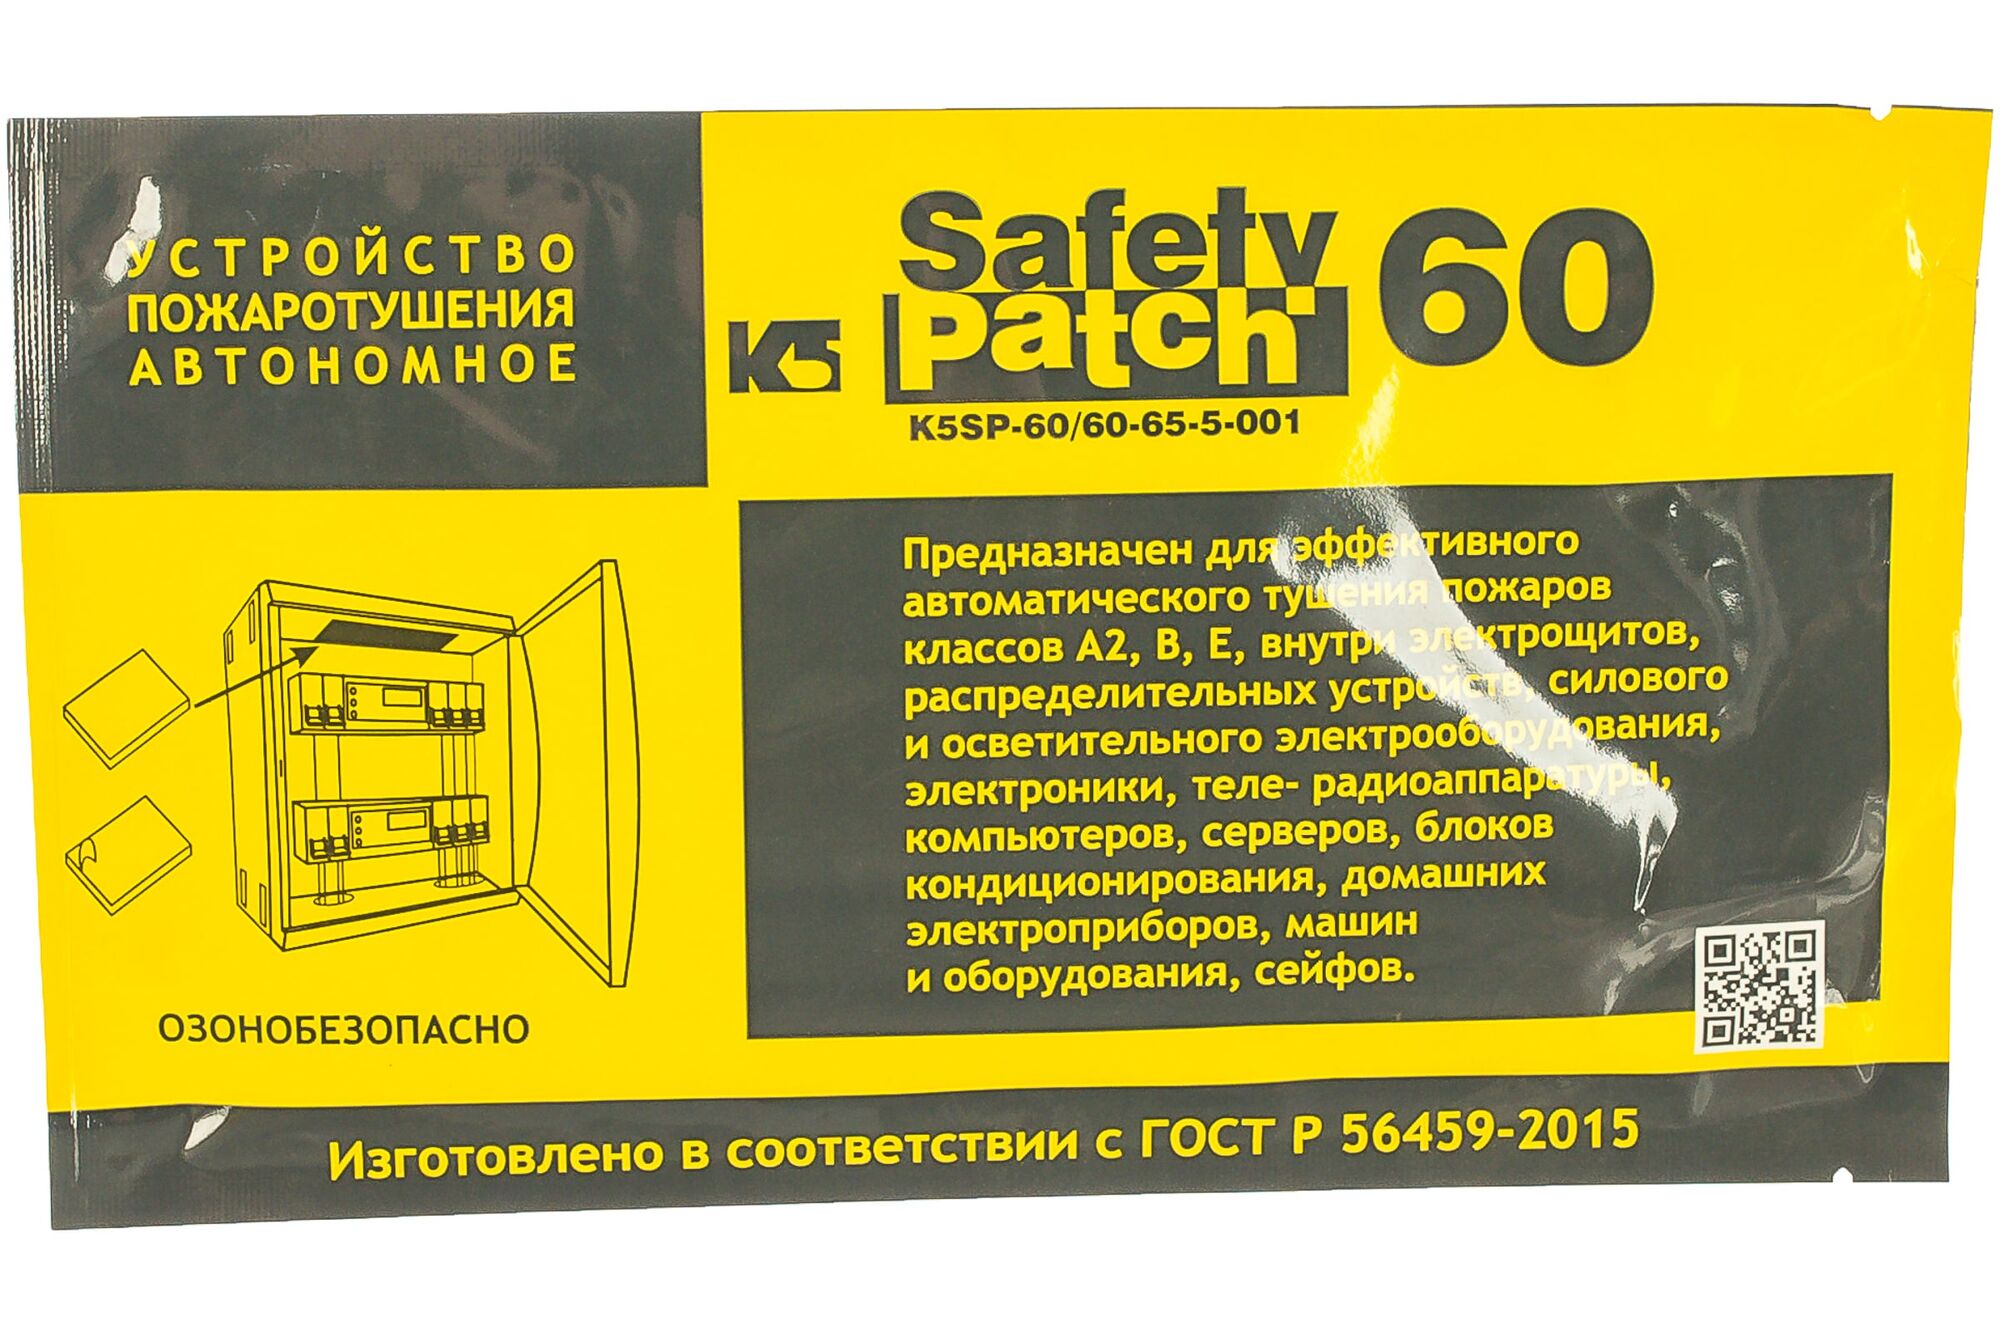 Автономное устройство пожаротушения K5 SAFETY PATCH 60 00140281